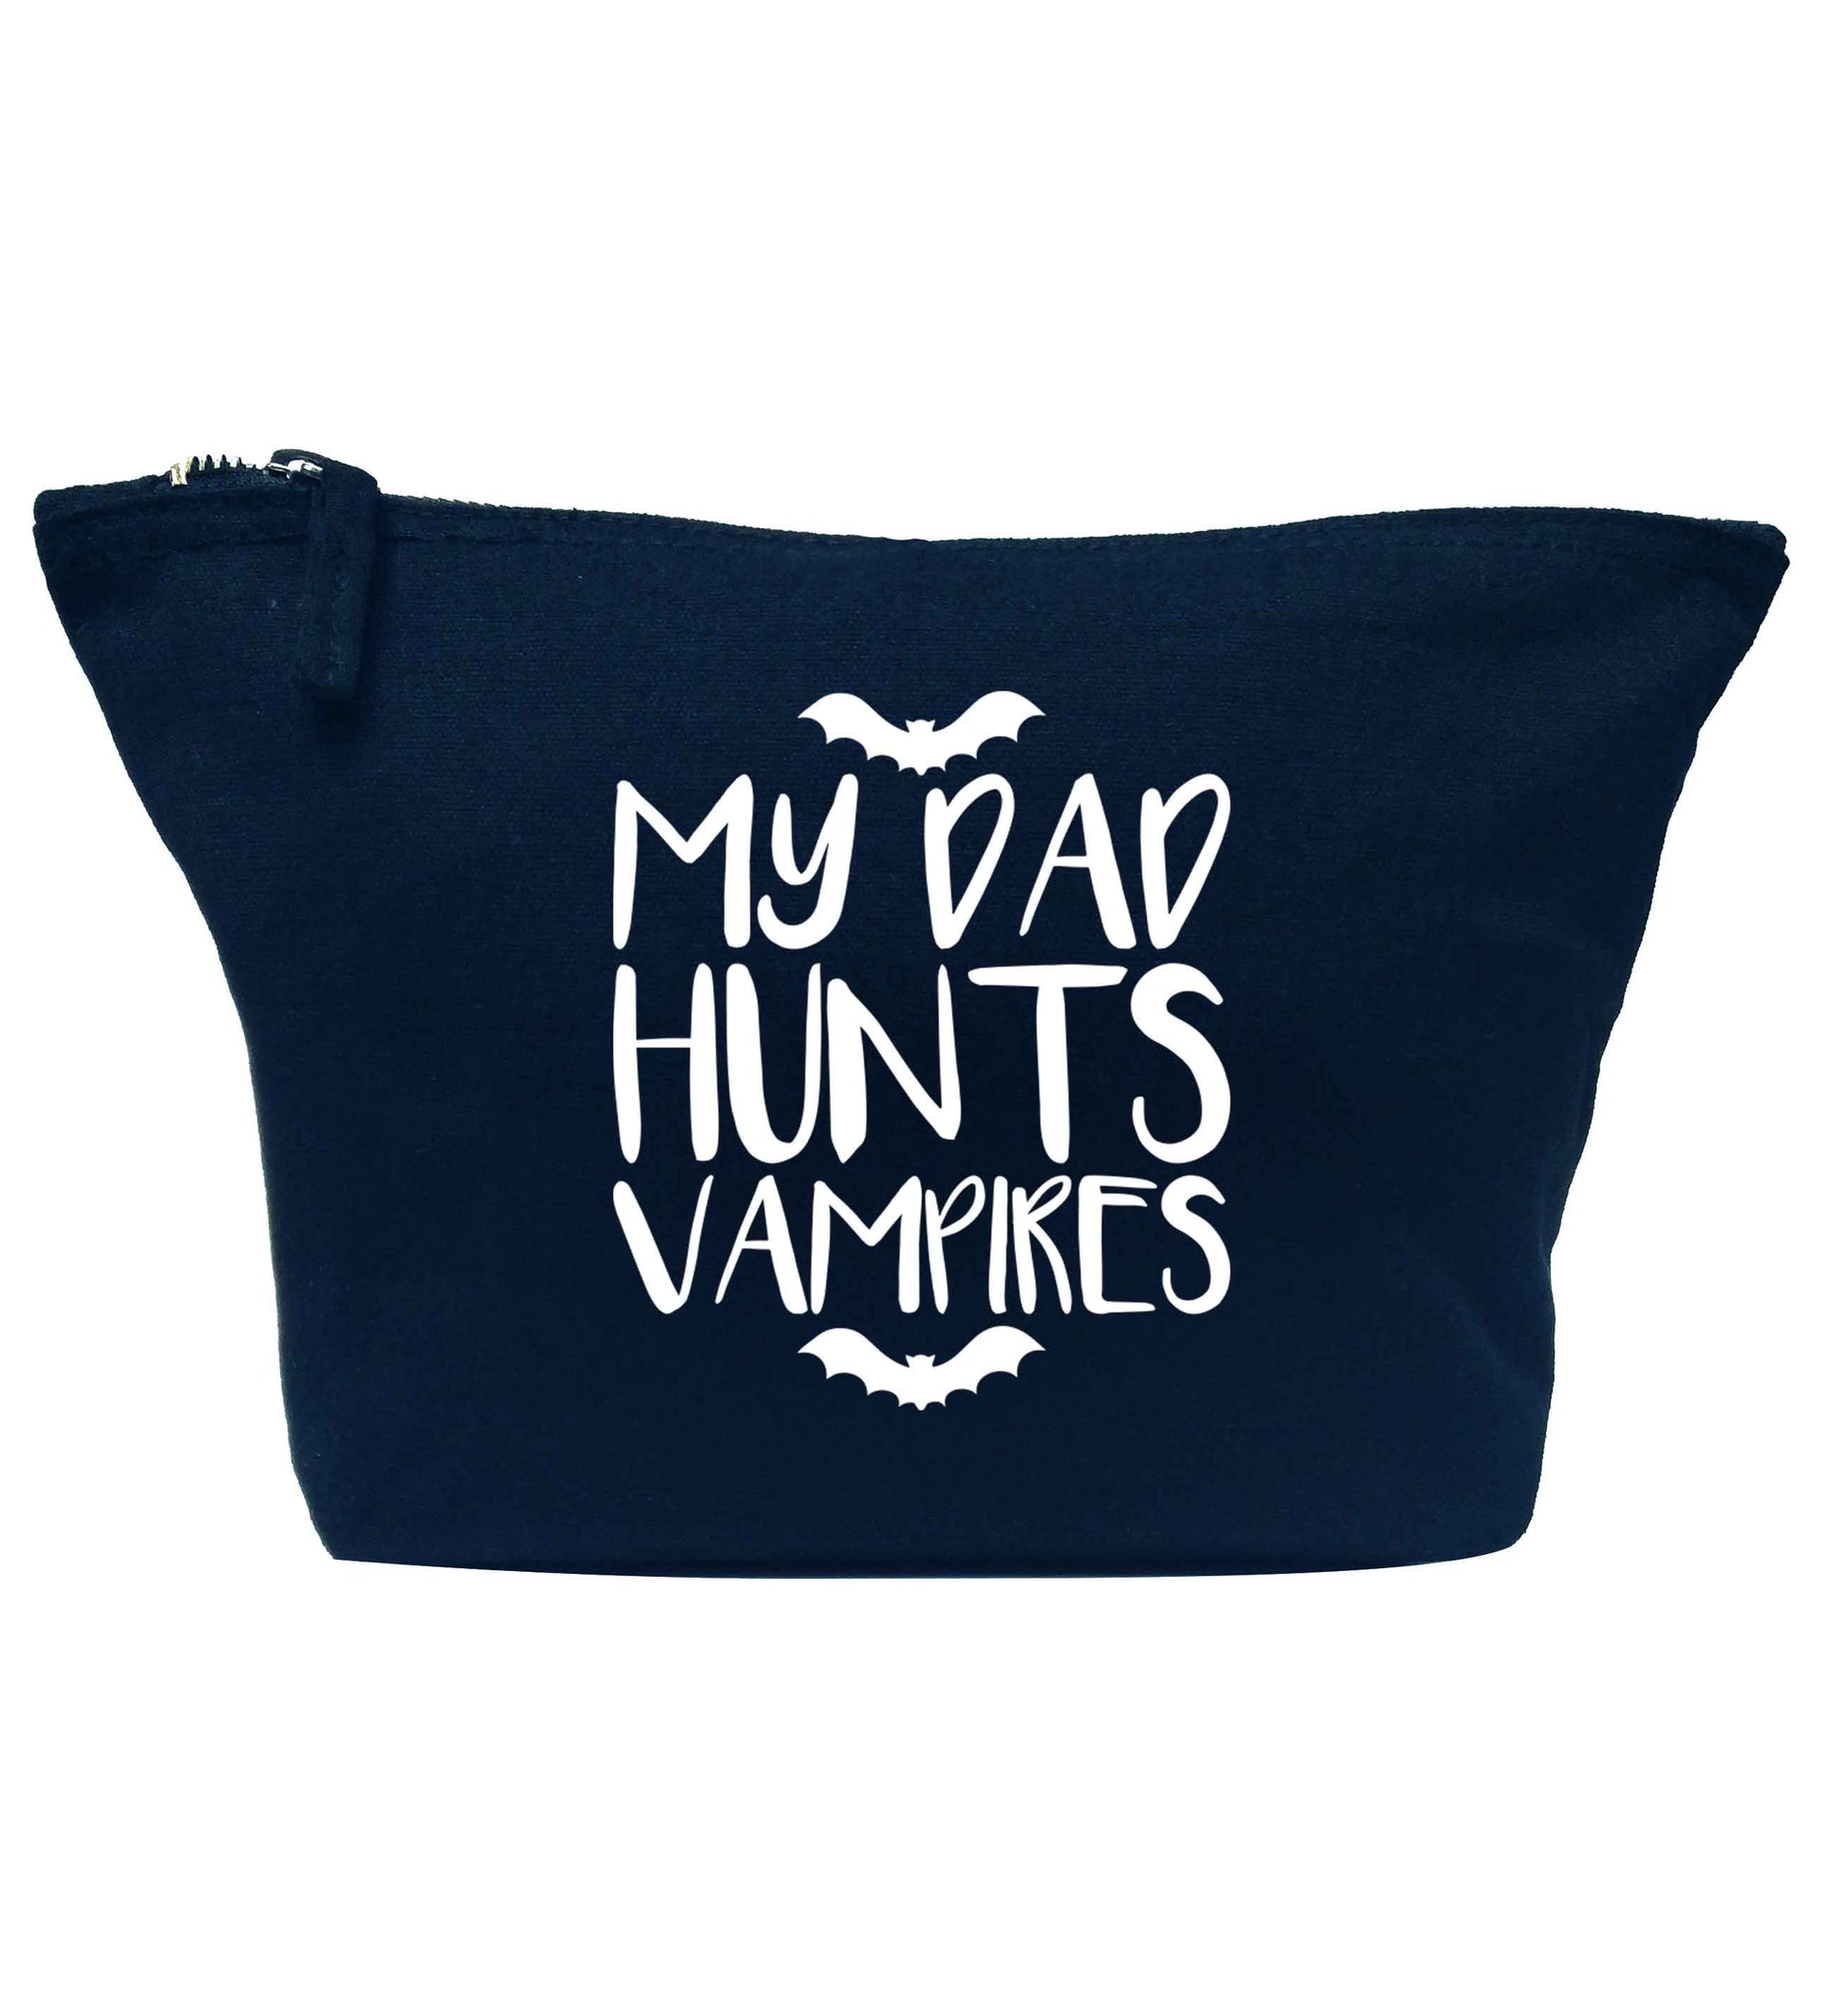 My dad hunts vampires navy makeup bag